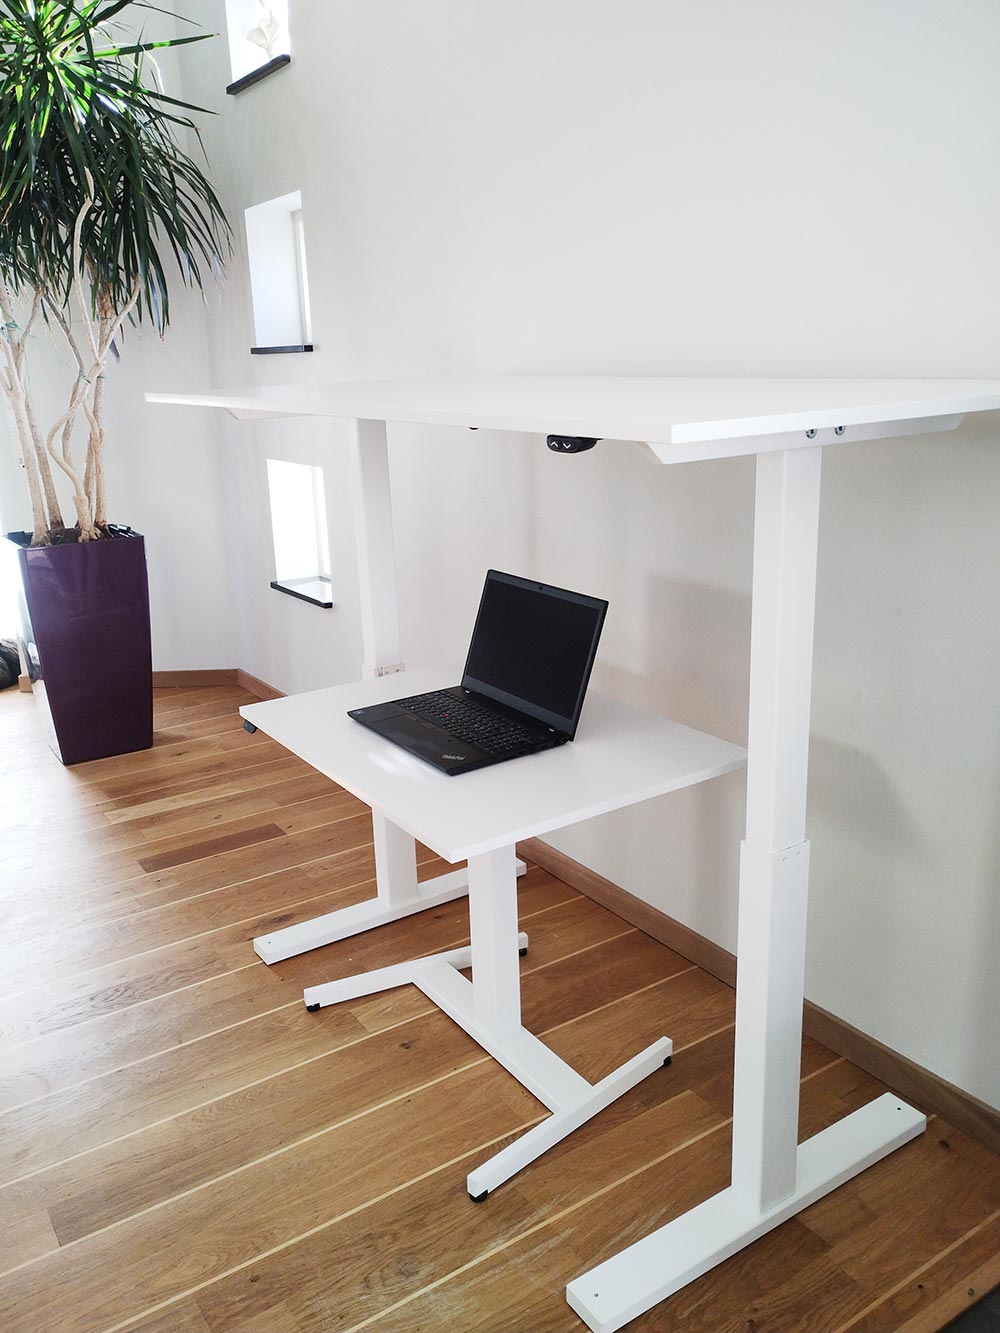 Ett lågt skrivbord står under ett mycket högre skrivbord mot en vit vägg.